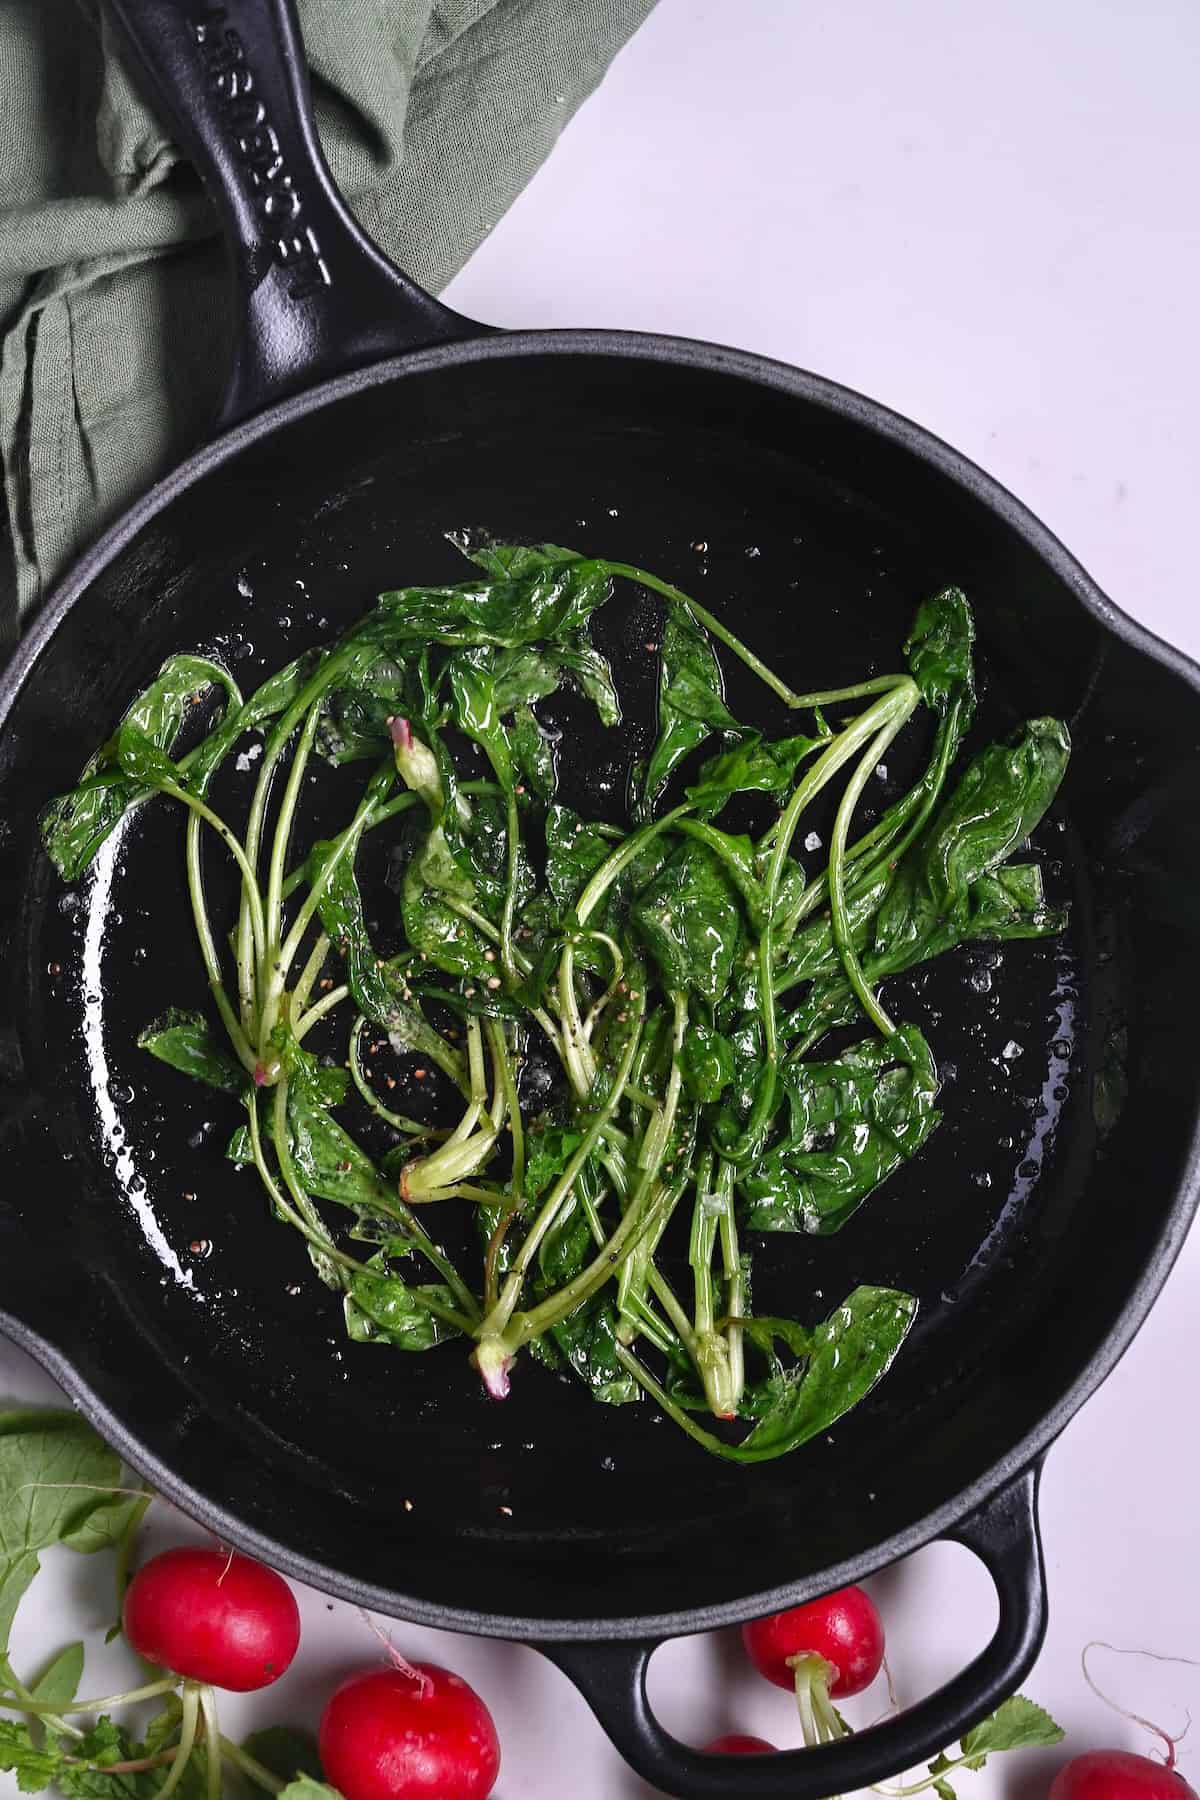 Sauteed radish greens in a pan